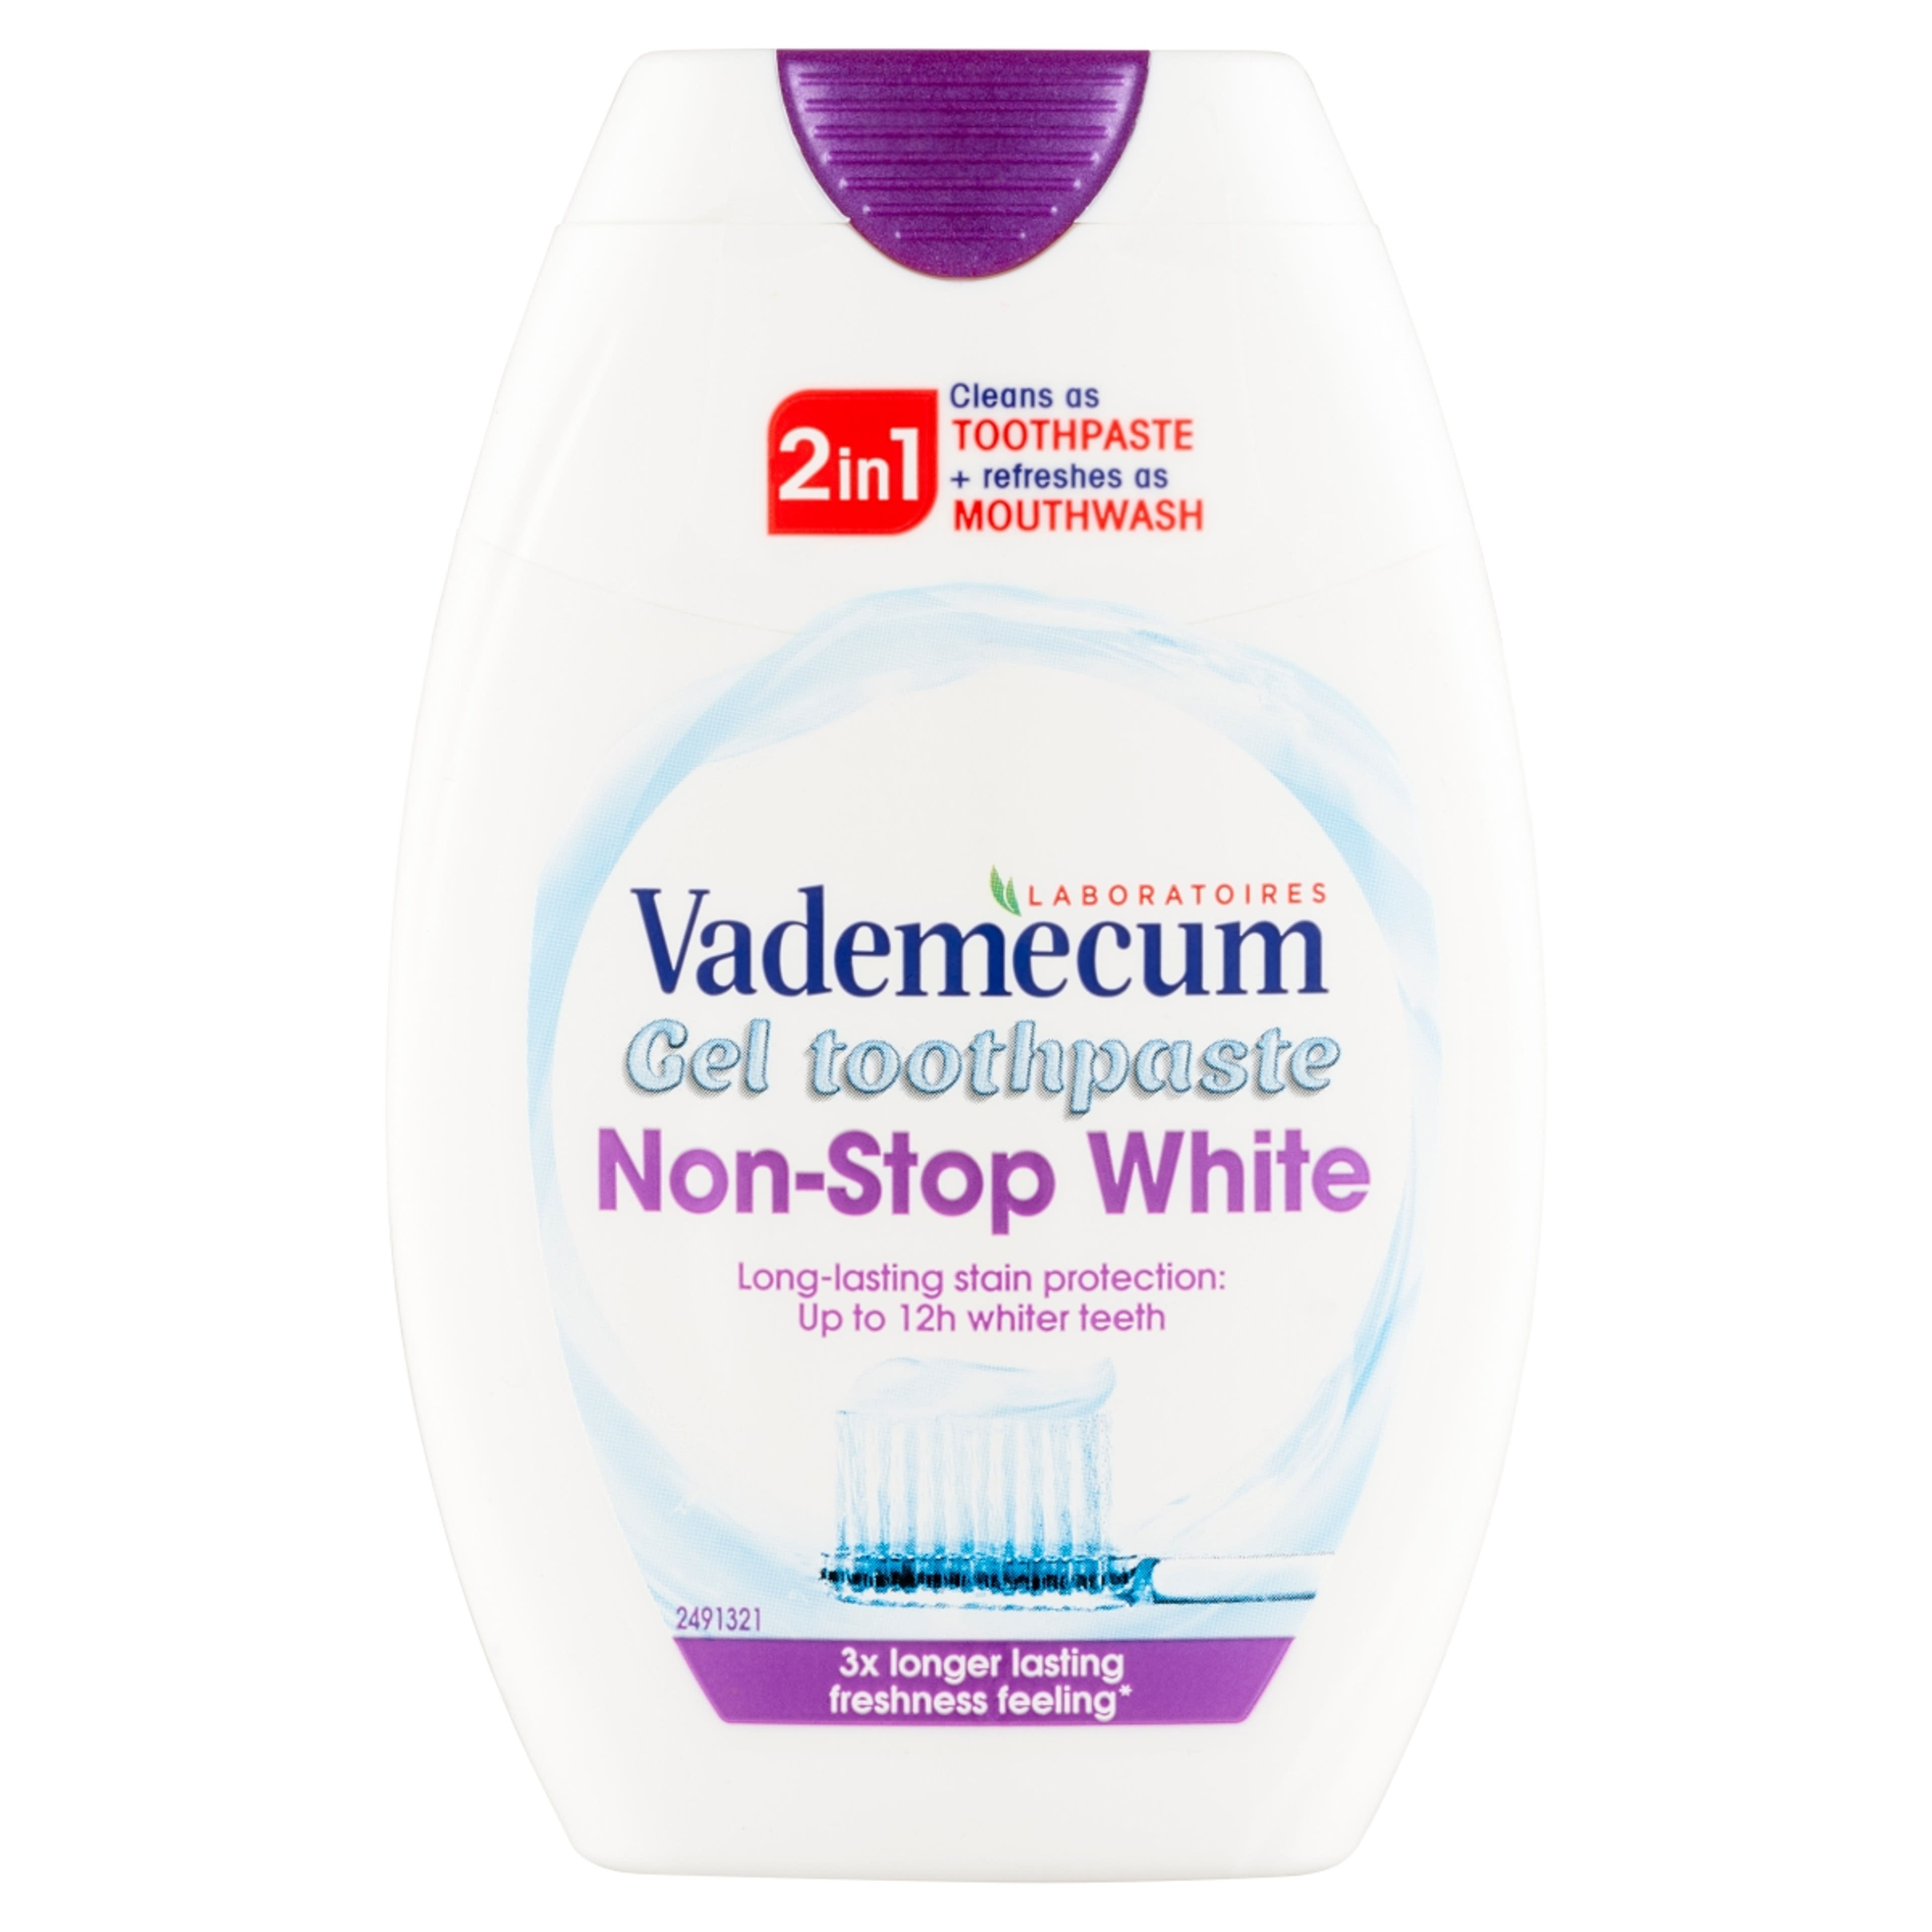 Vademecum 2in1 Non Stop White fogkrém - 75 ml